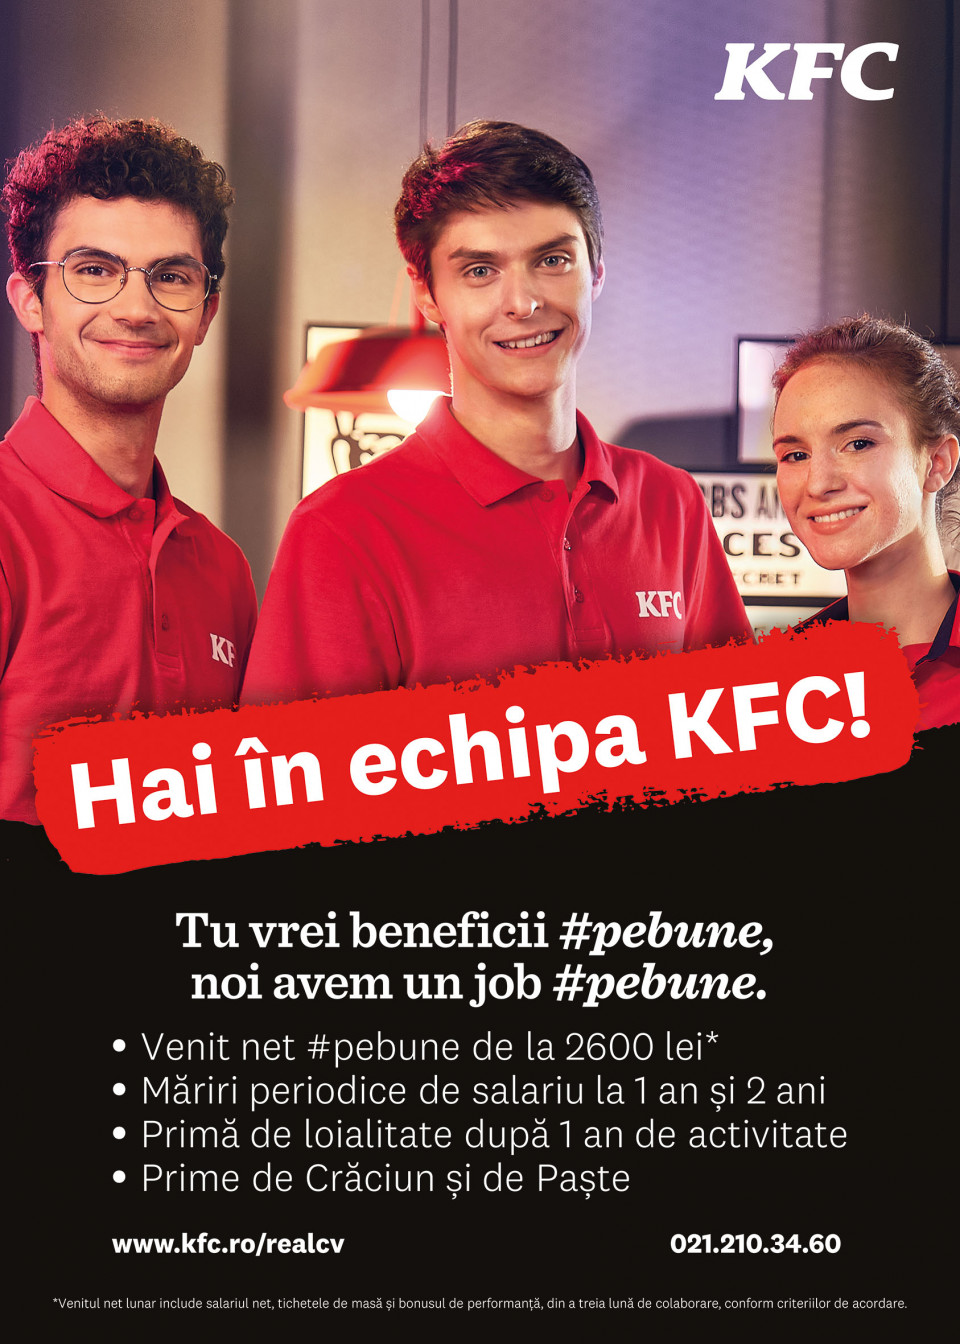 KFC cauta casieri si lucratori in bucatarie! Hai intr-o echipa #pebune!